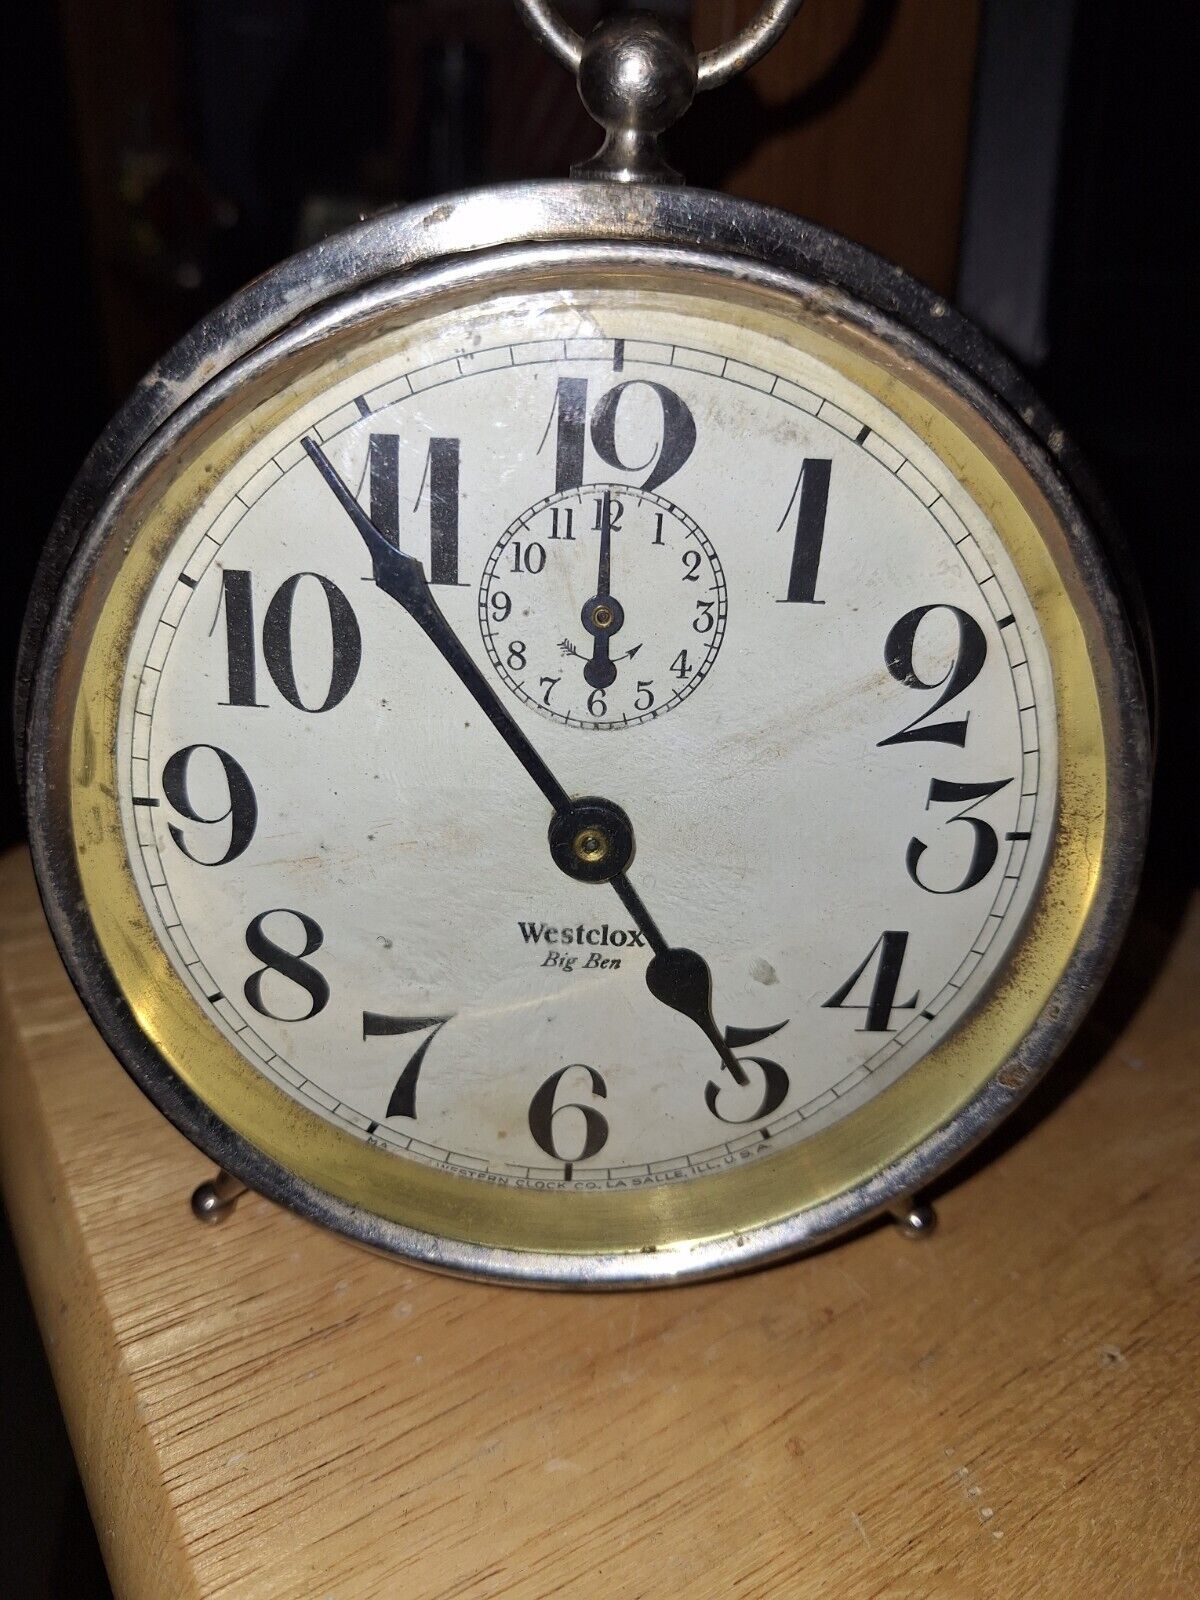 Westclox Big Ben Alarm Clock Working Condition